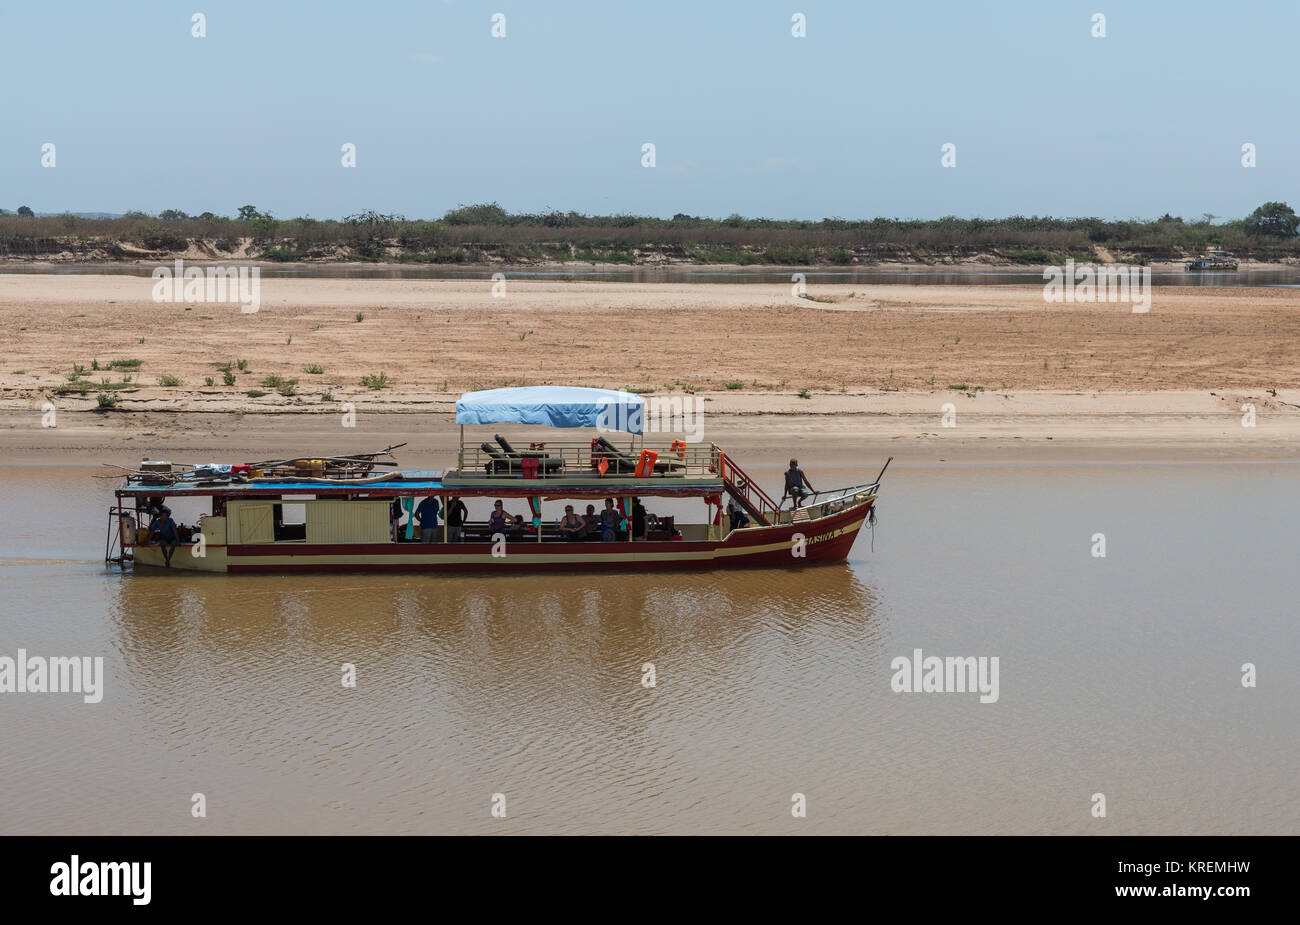 Croisière le long de la rivière transporte les touristes Mania Rivière. Madagascar, l'Afrique. Banque D'Images